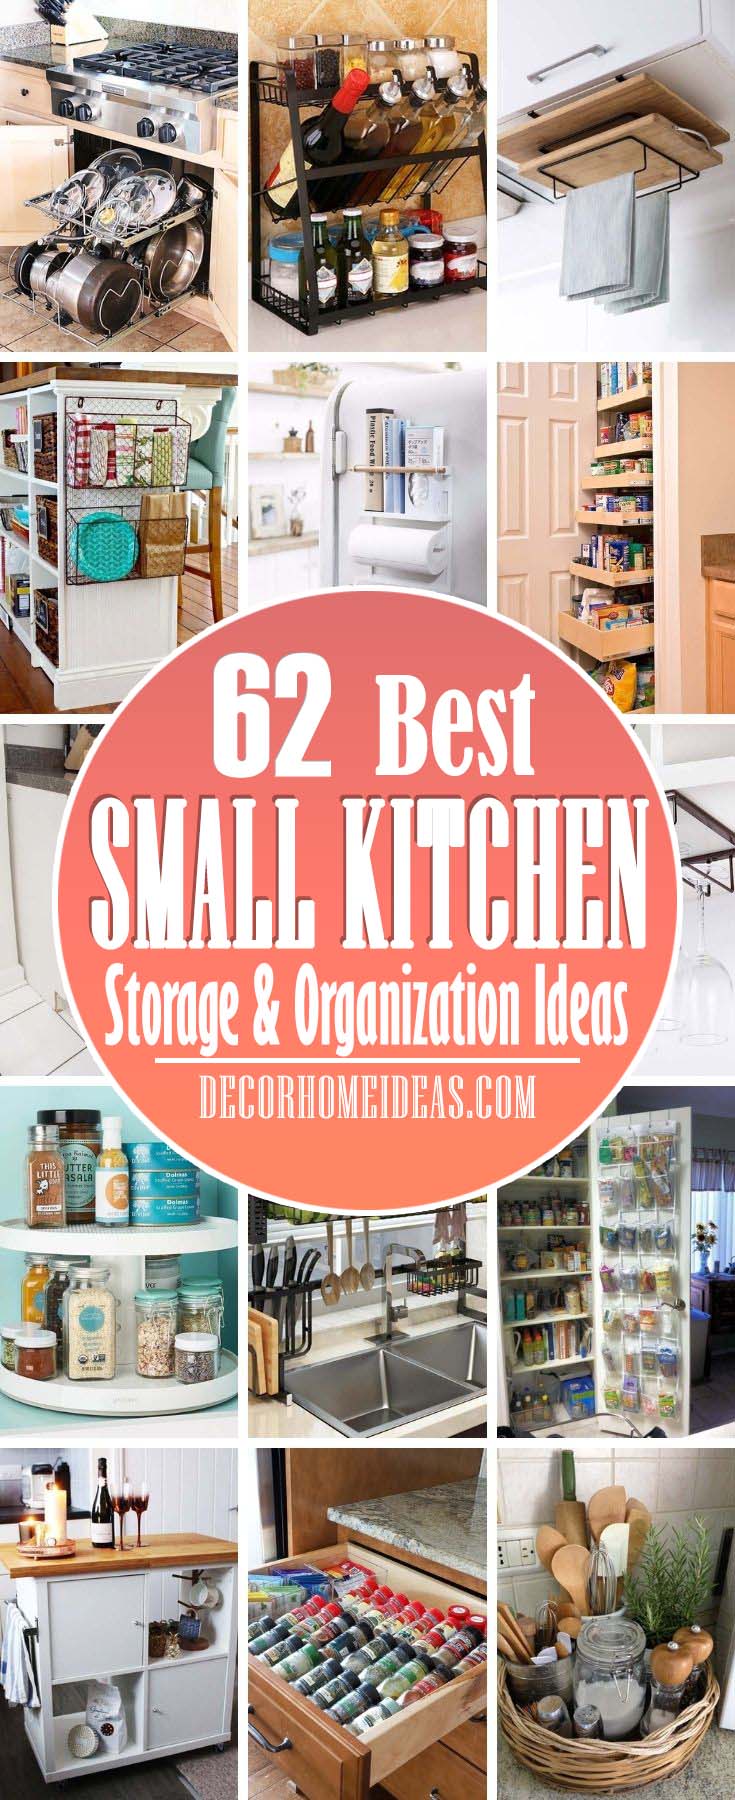 25 Best Small Kitchen Storage Organization Ideas For Instant ...